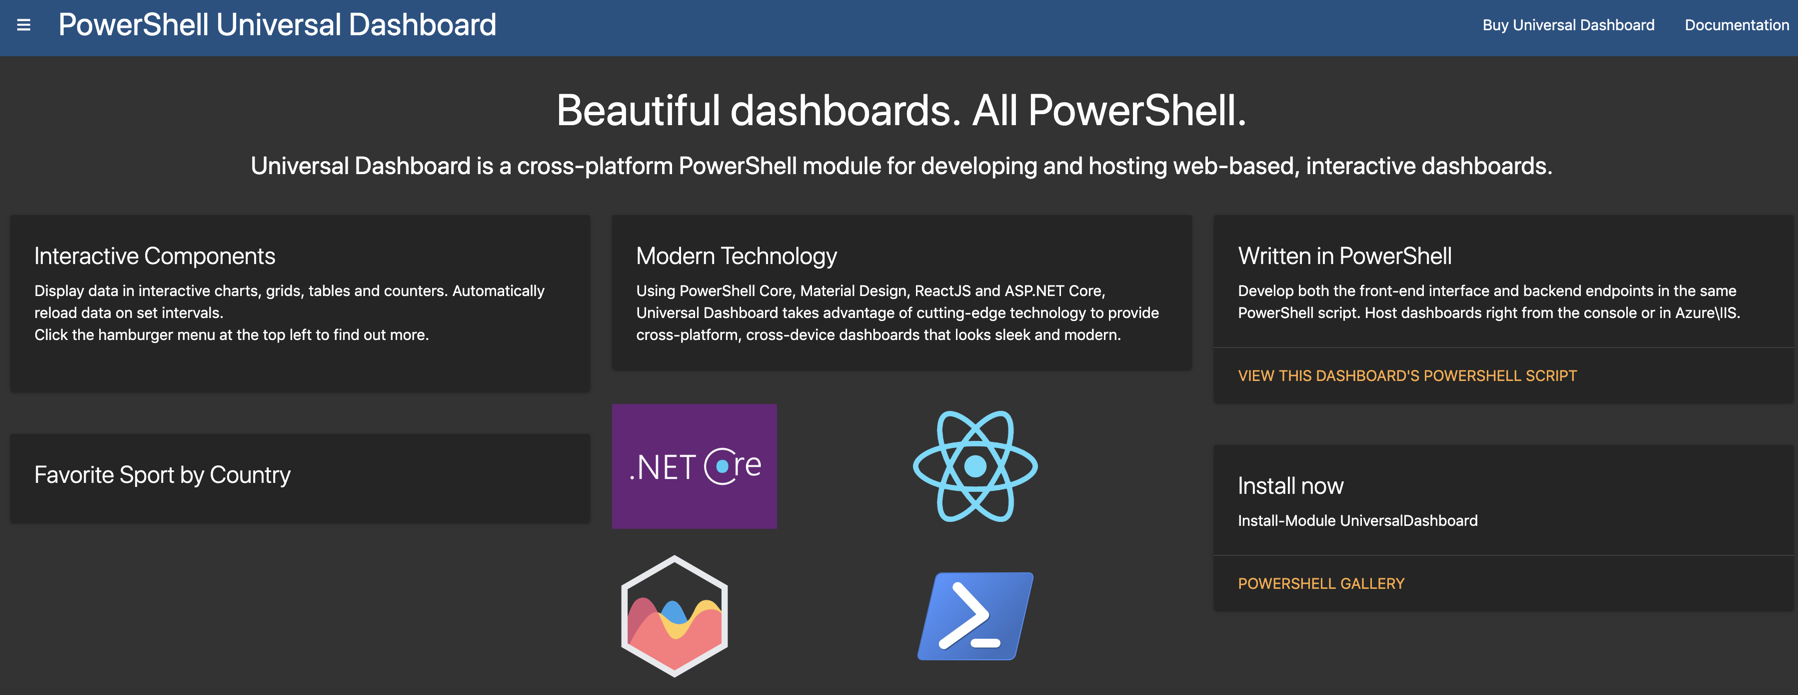 PowerShell Universal Dashboard in Azure